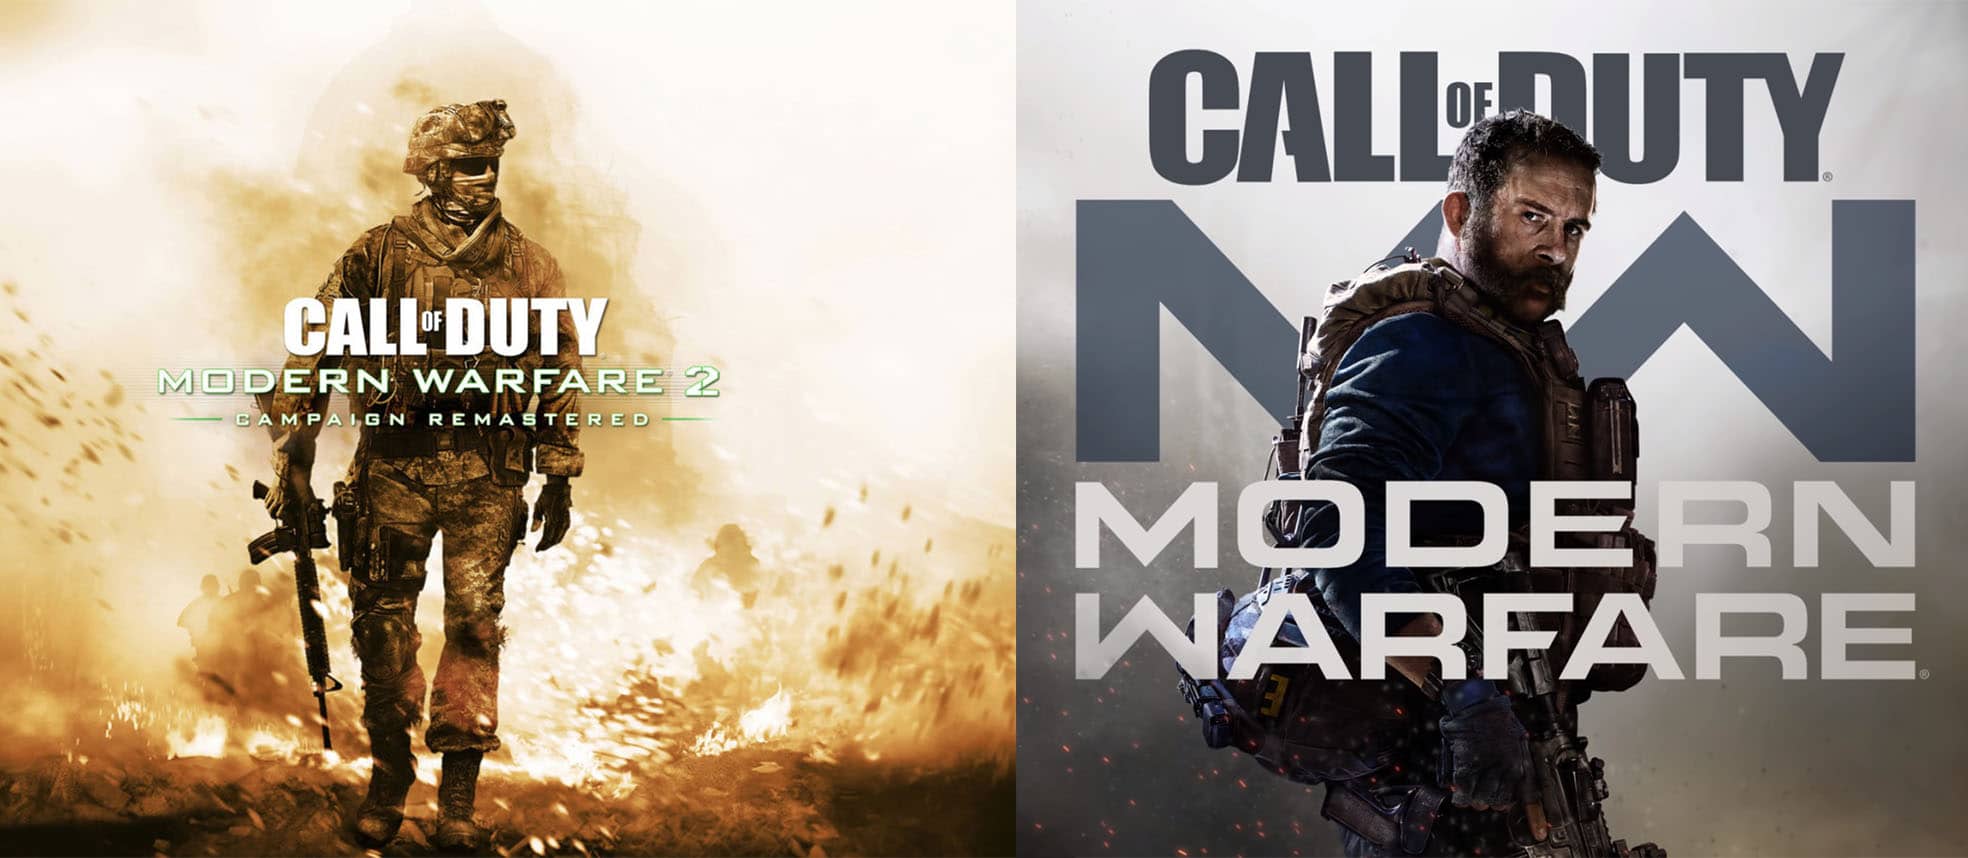 Call of Duty Modern Warfare 2, Modern Warfare, GamersRD